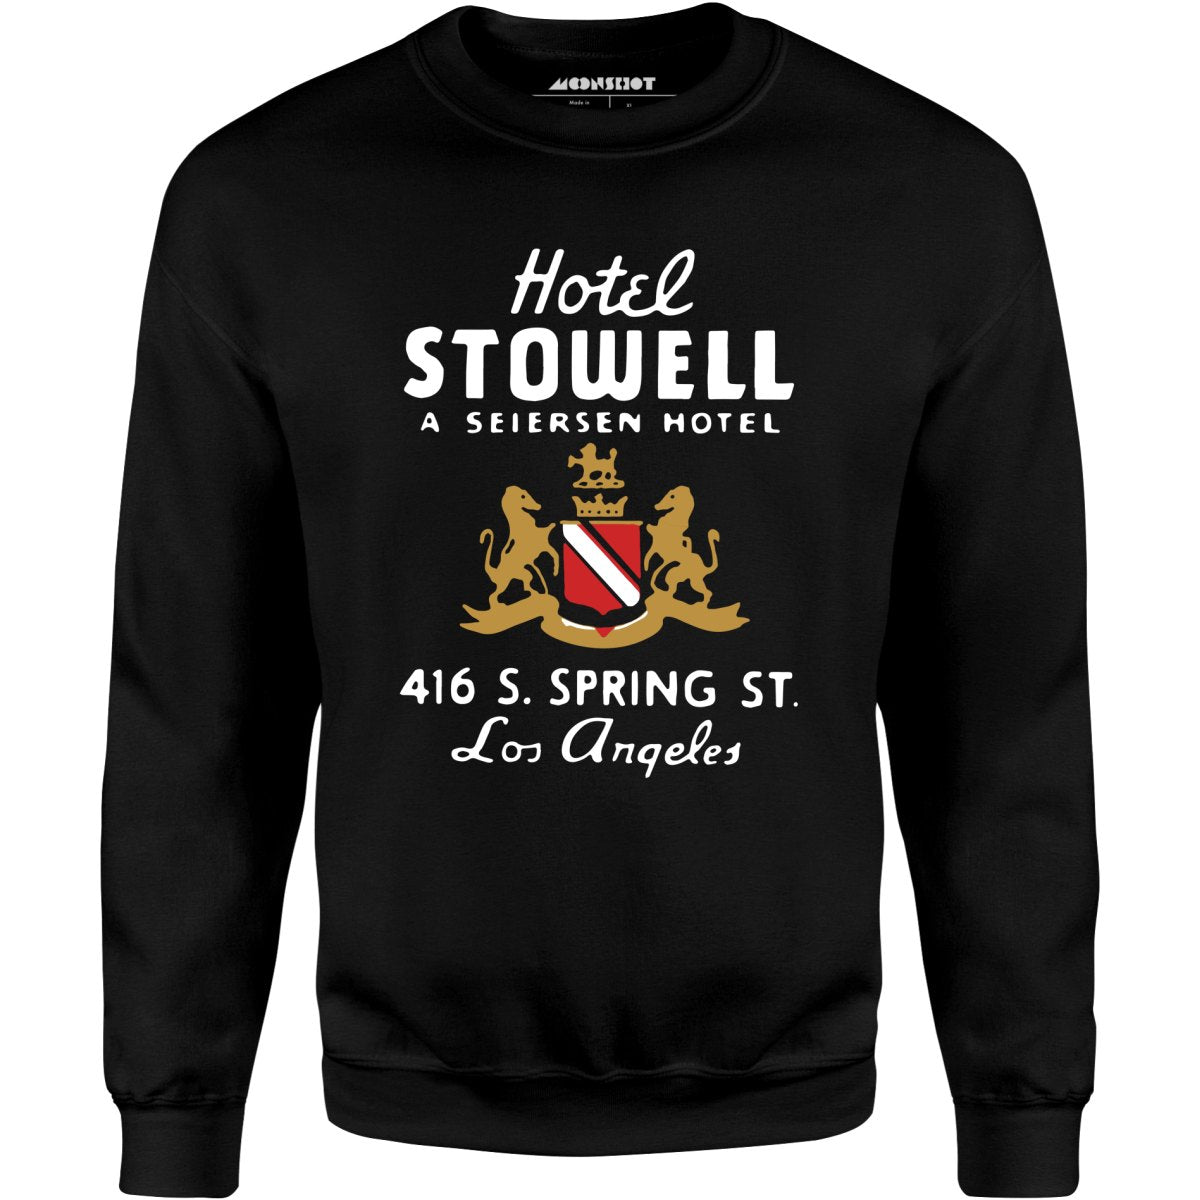 Hotel Stowell - Los Angeles, CA - Vintage Hotel - Unisex Sweatshirt